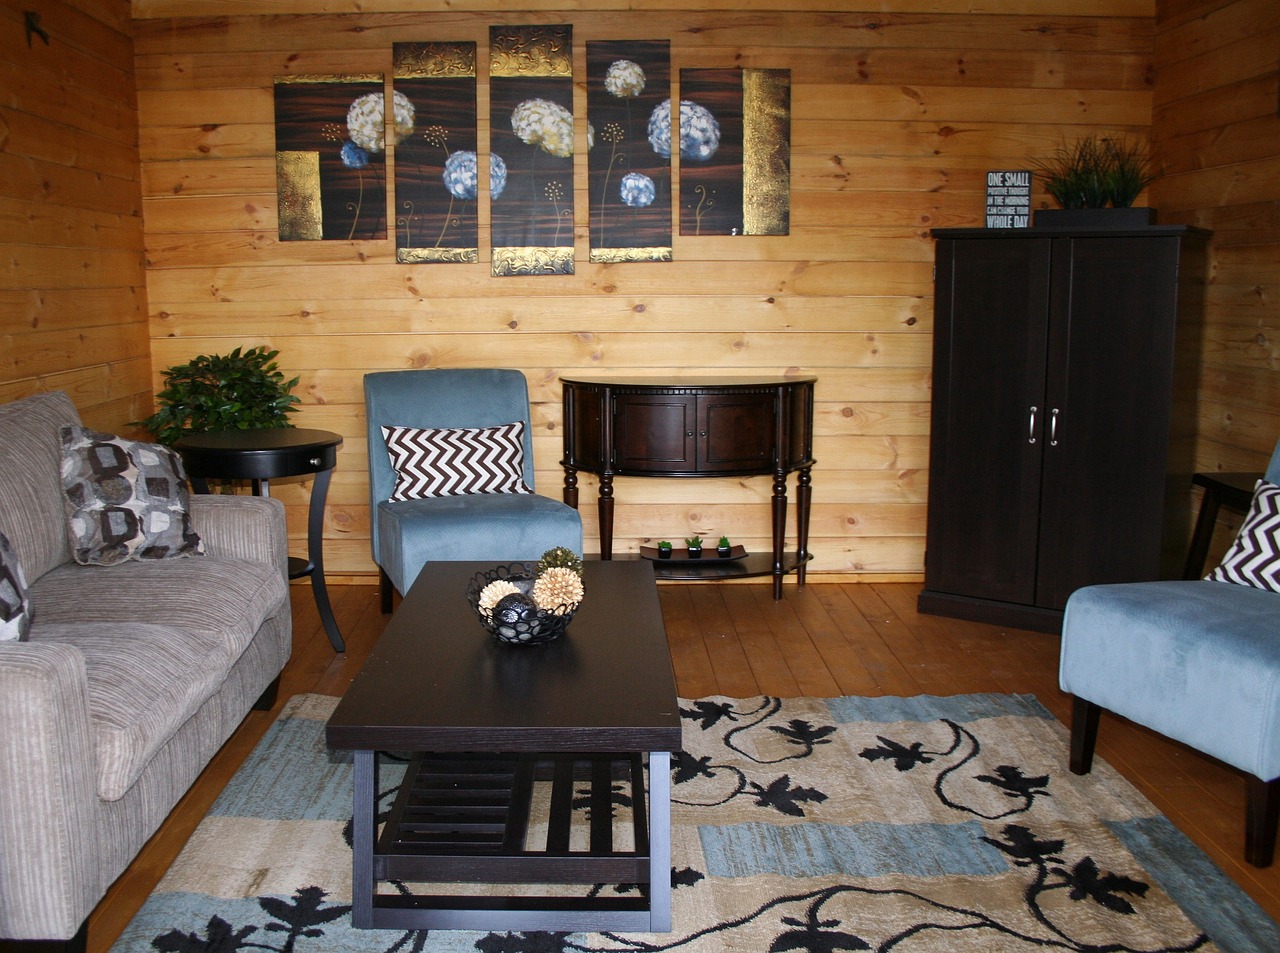 新式创意榻榻米床——打造温馨舒适的家居空间  第1张